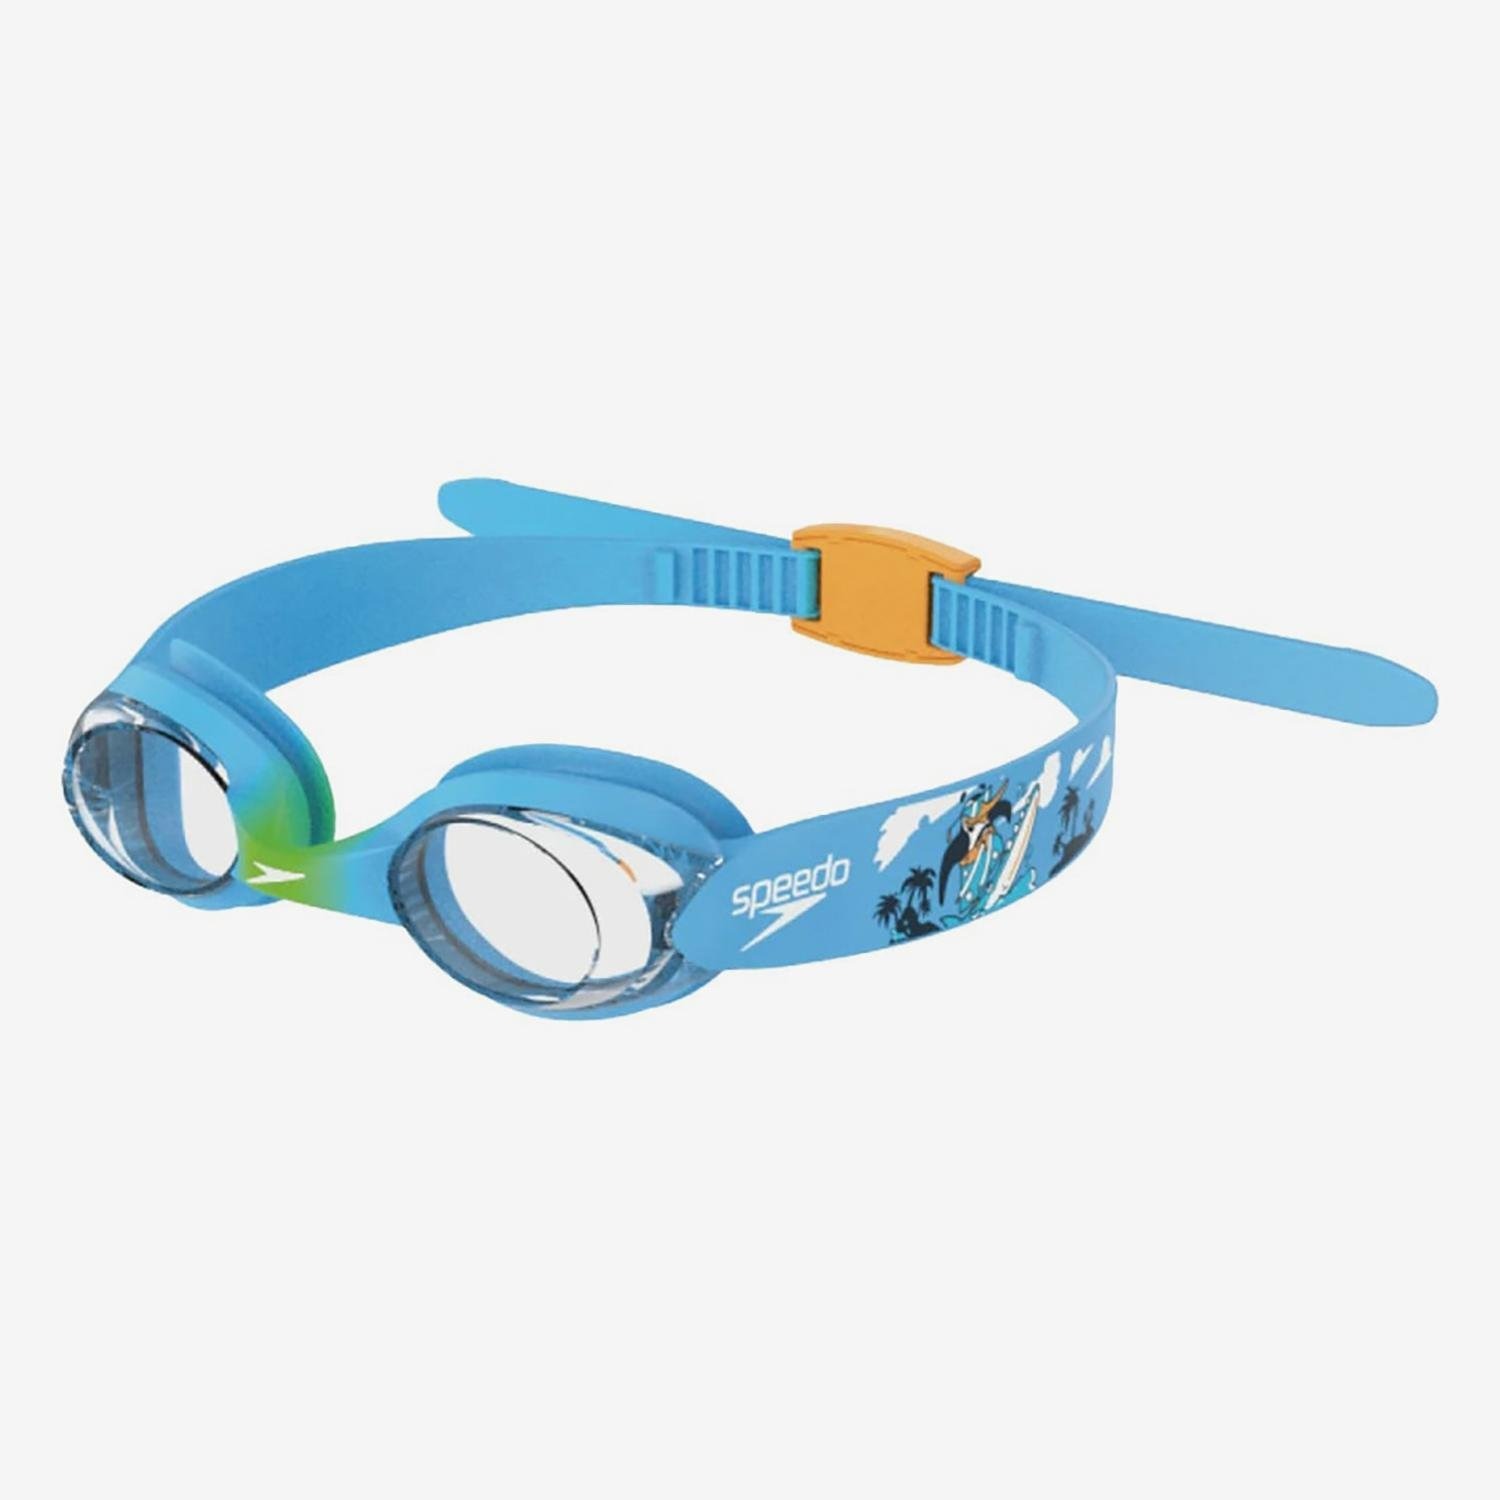 Speedo-zwembril- kids 2-6jaar-blauw/groen